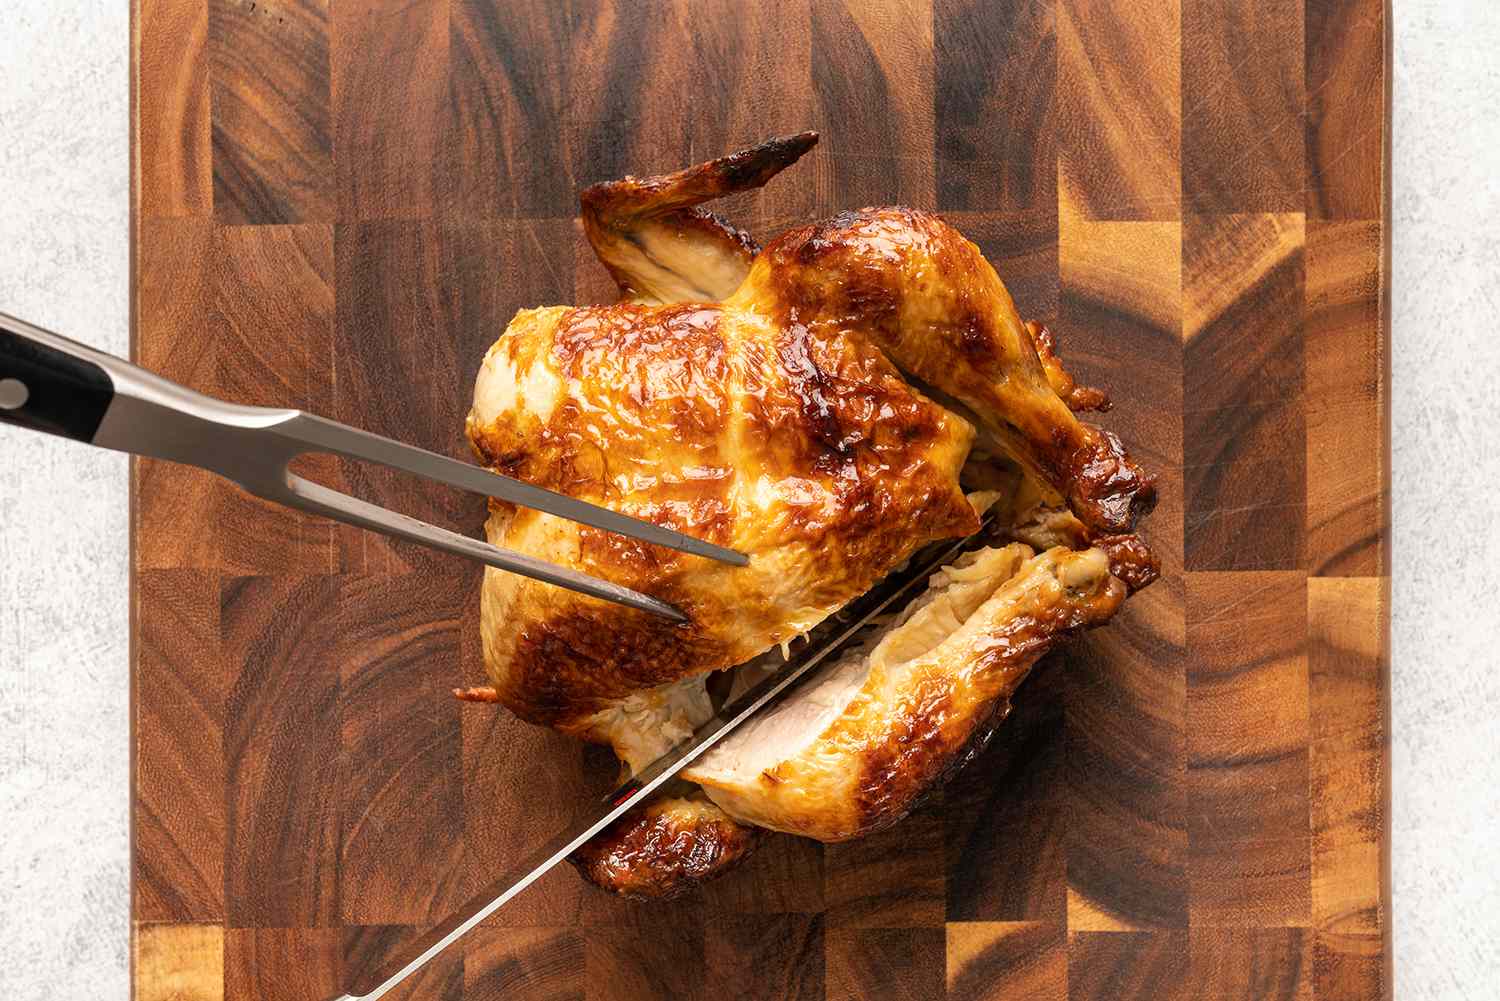 دجاج مشوي كامل يتم نحته على لوح تقطيع ، قطع سكين إلى ساق منفصلة عن الصدر